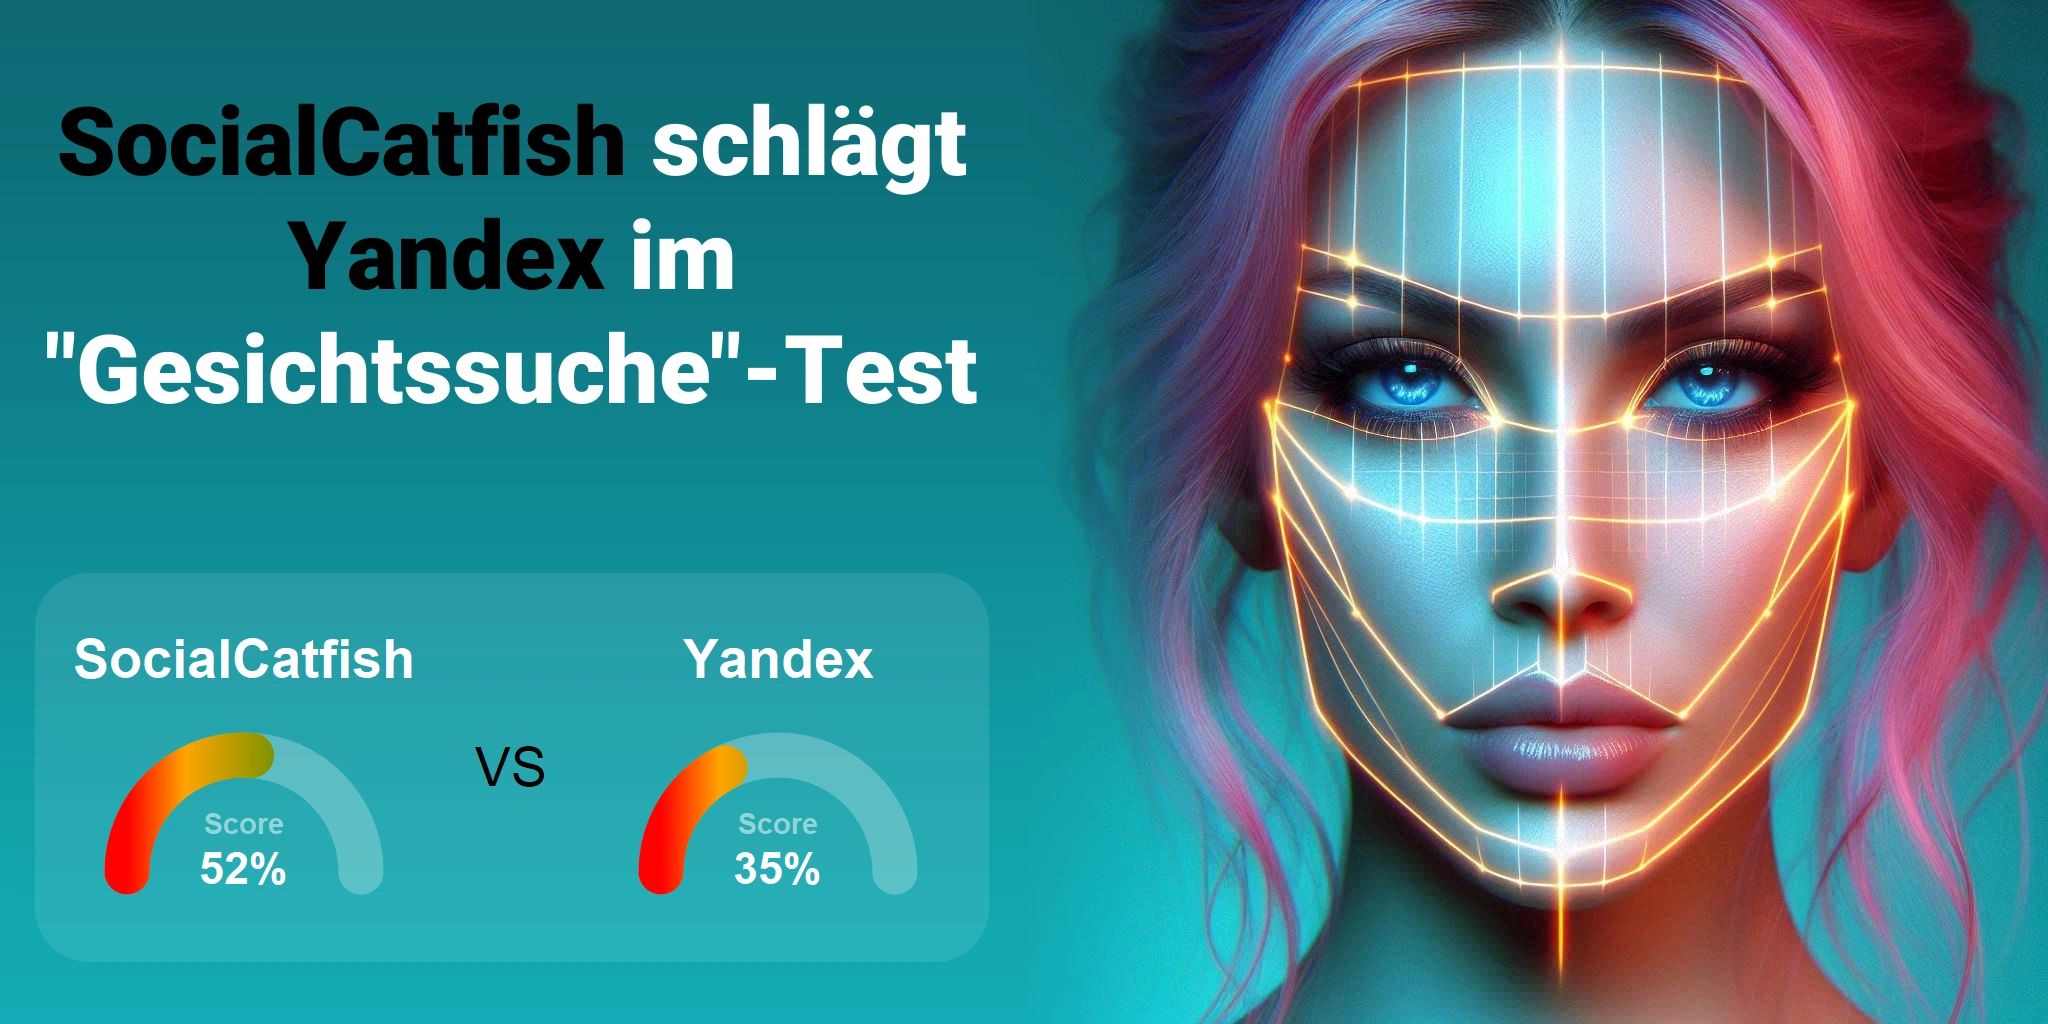 Welcher ist besser für die Gesichtssuche: <br>SocialCatfish oder Yandex?